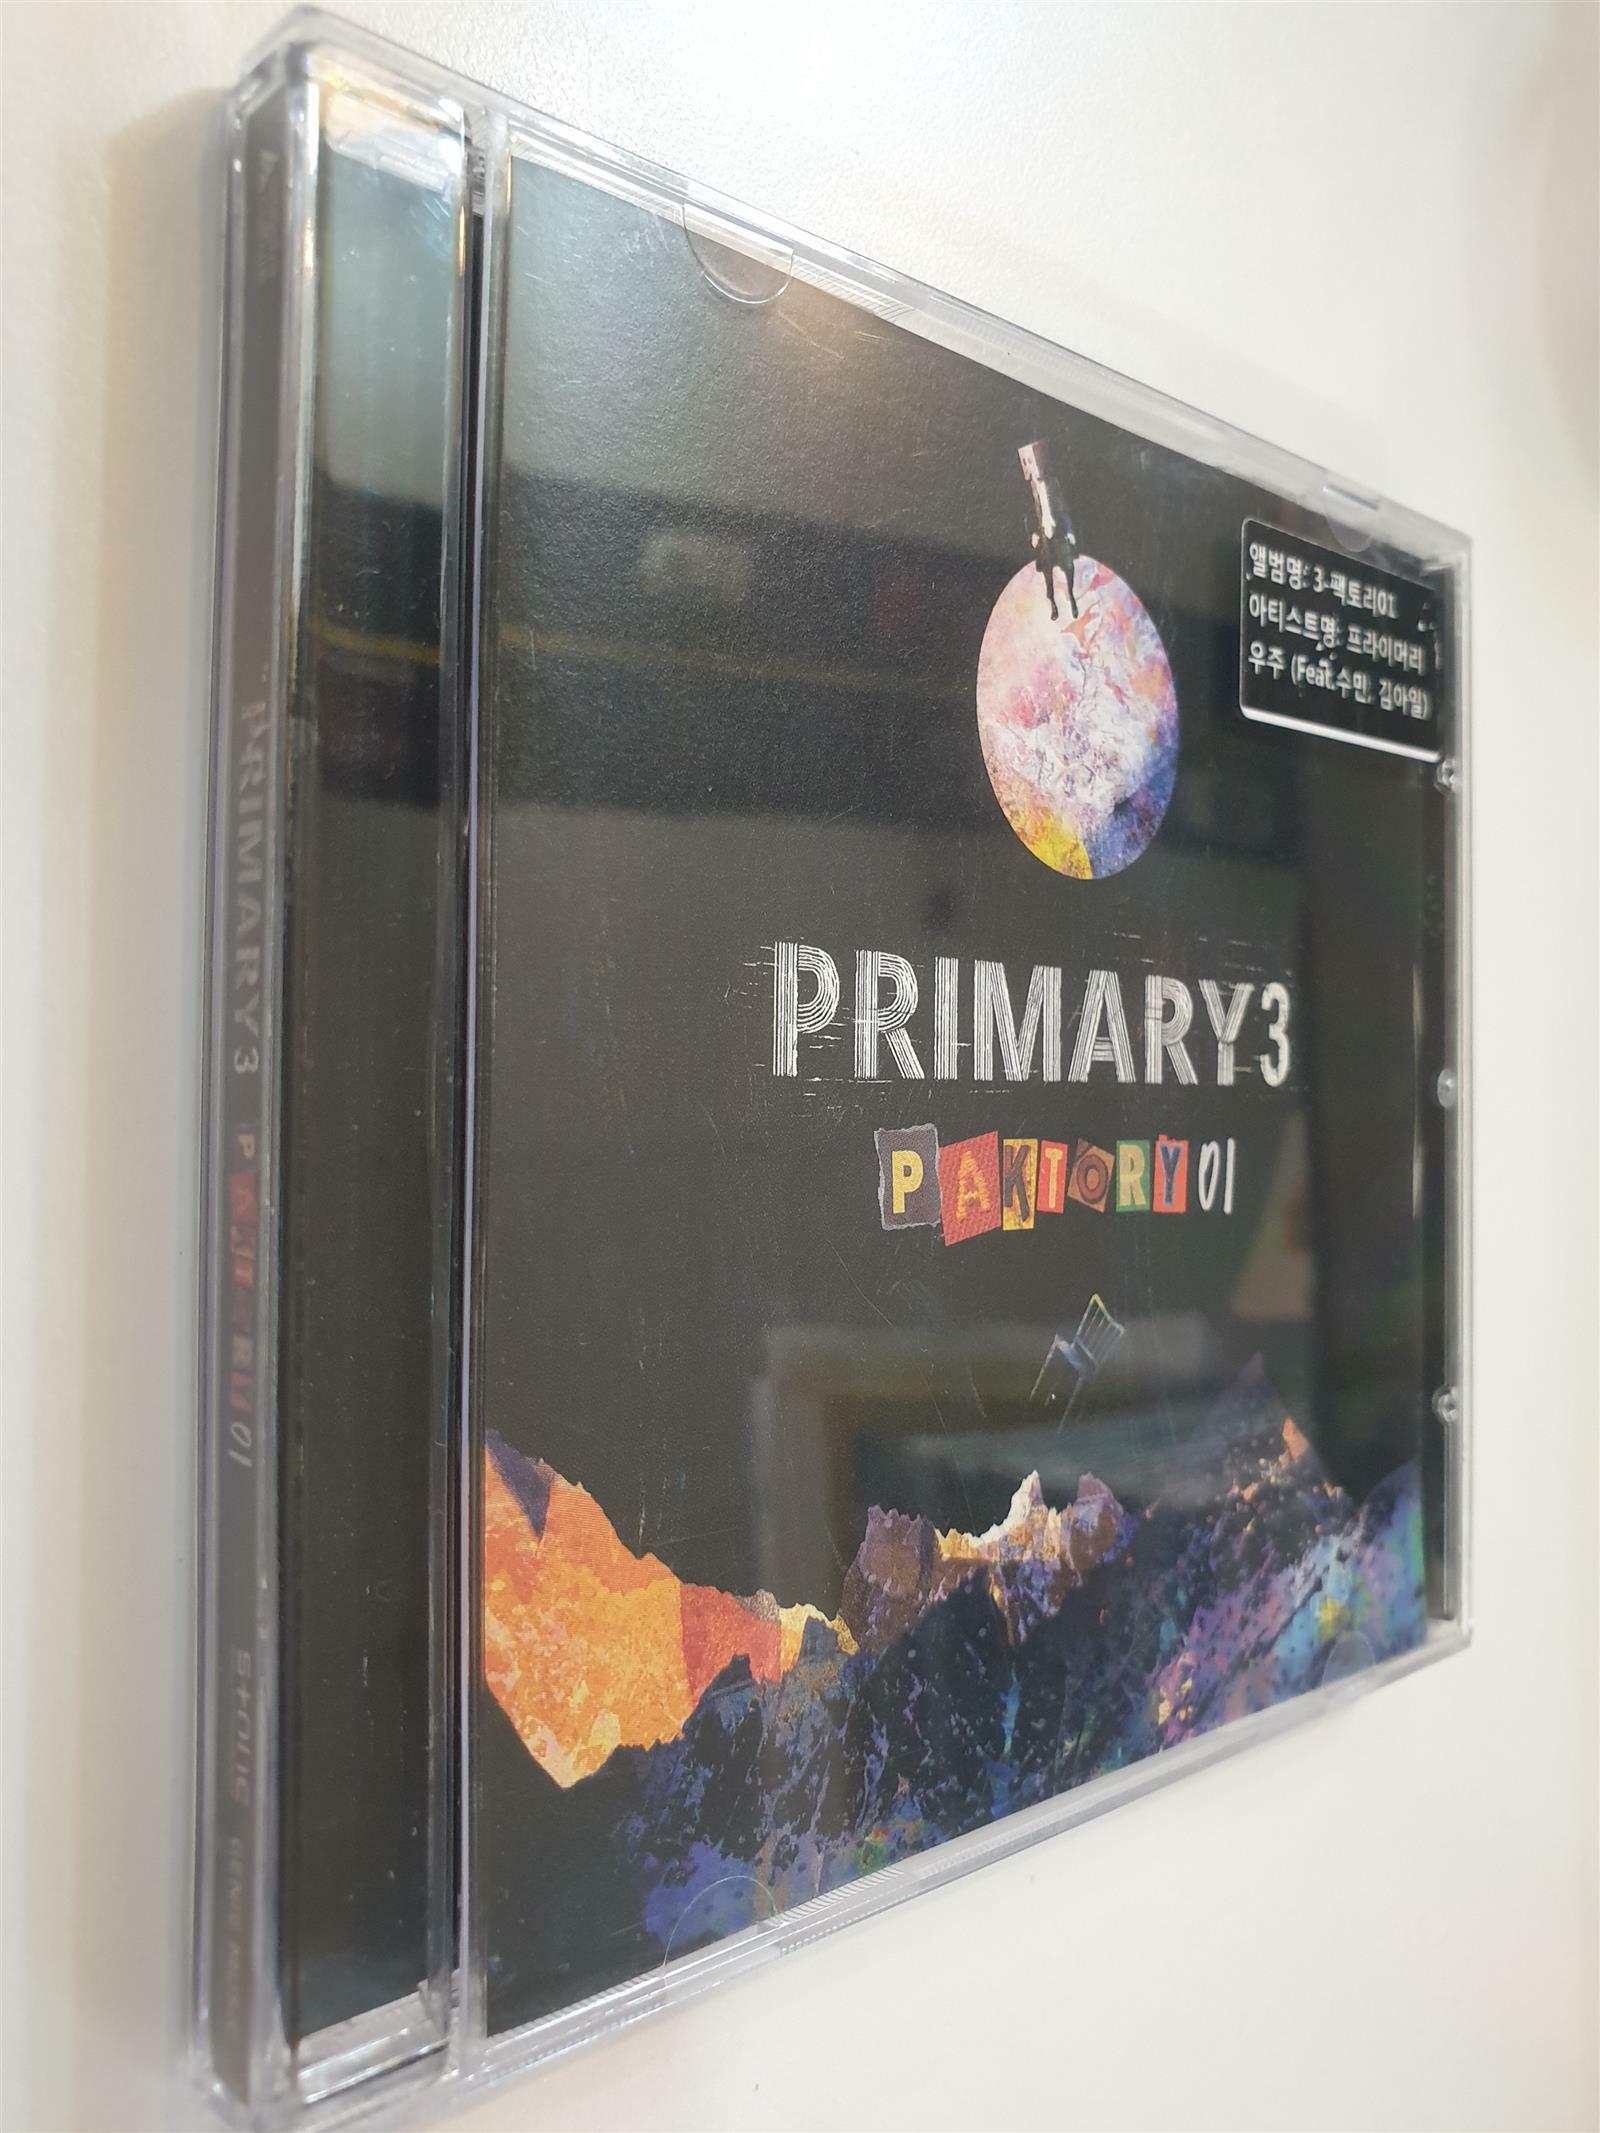 [중고] 프라이머리 (Primary) - 3-PAKTORY01 (홍보용 음반) 